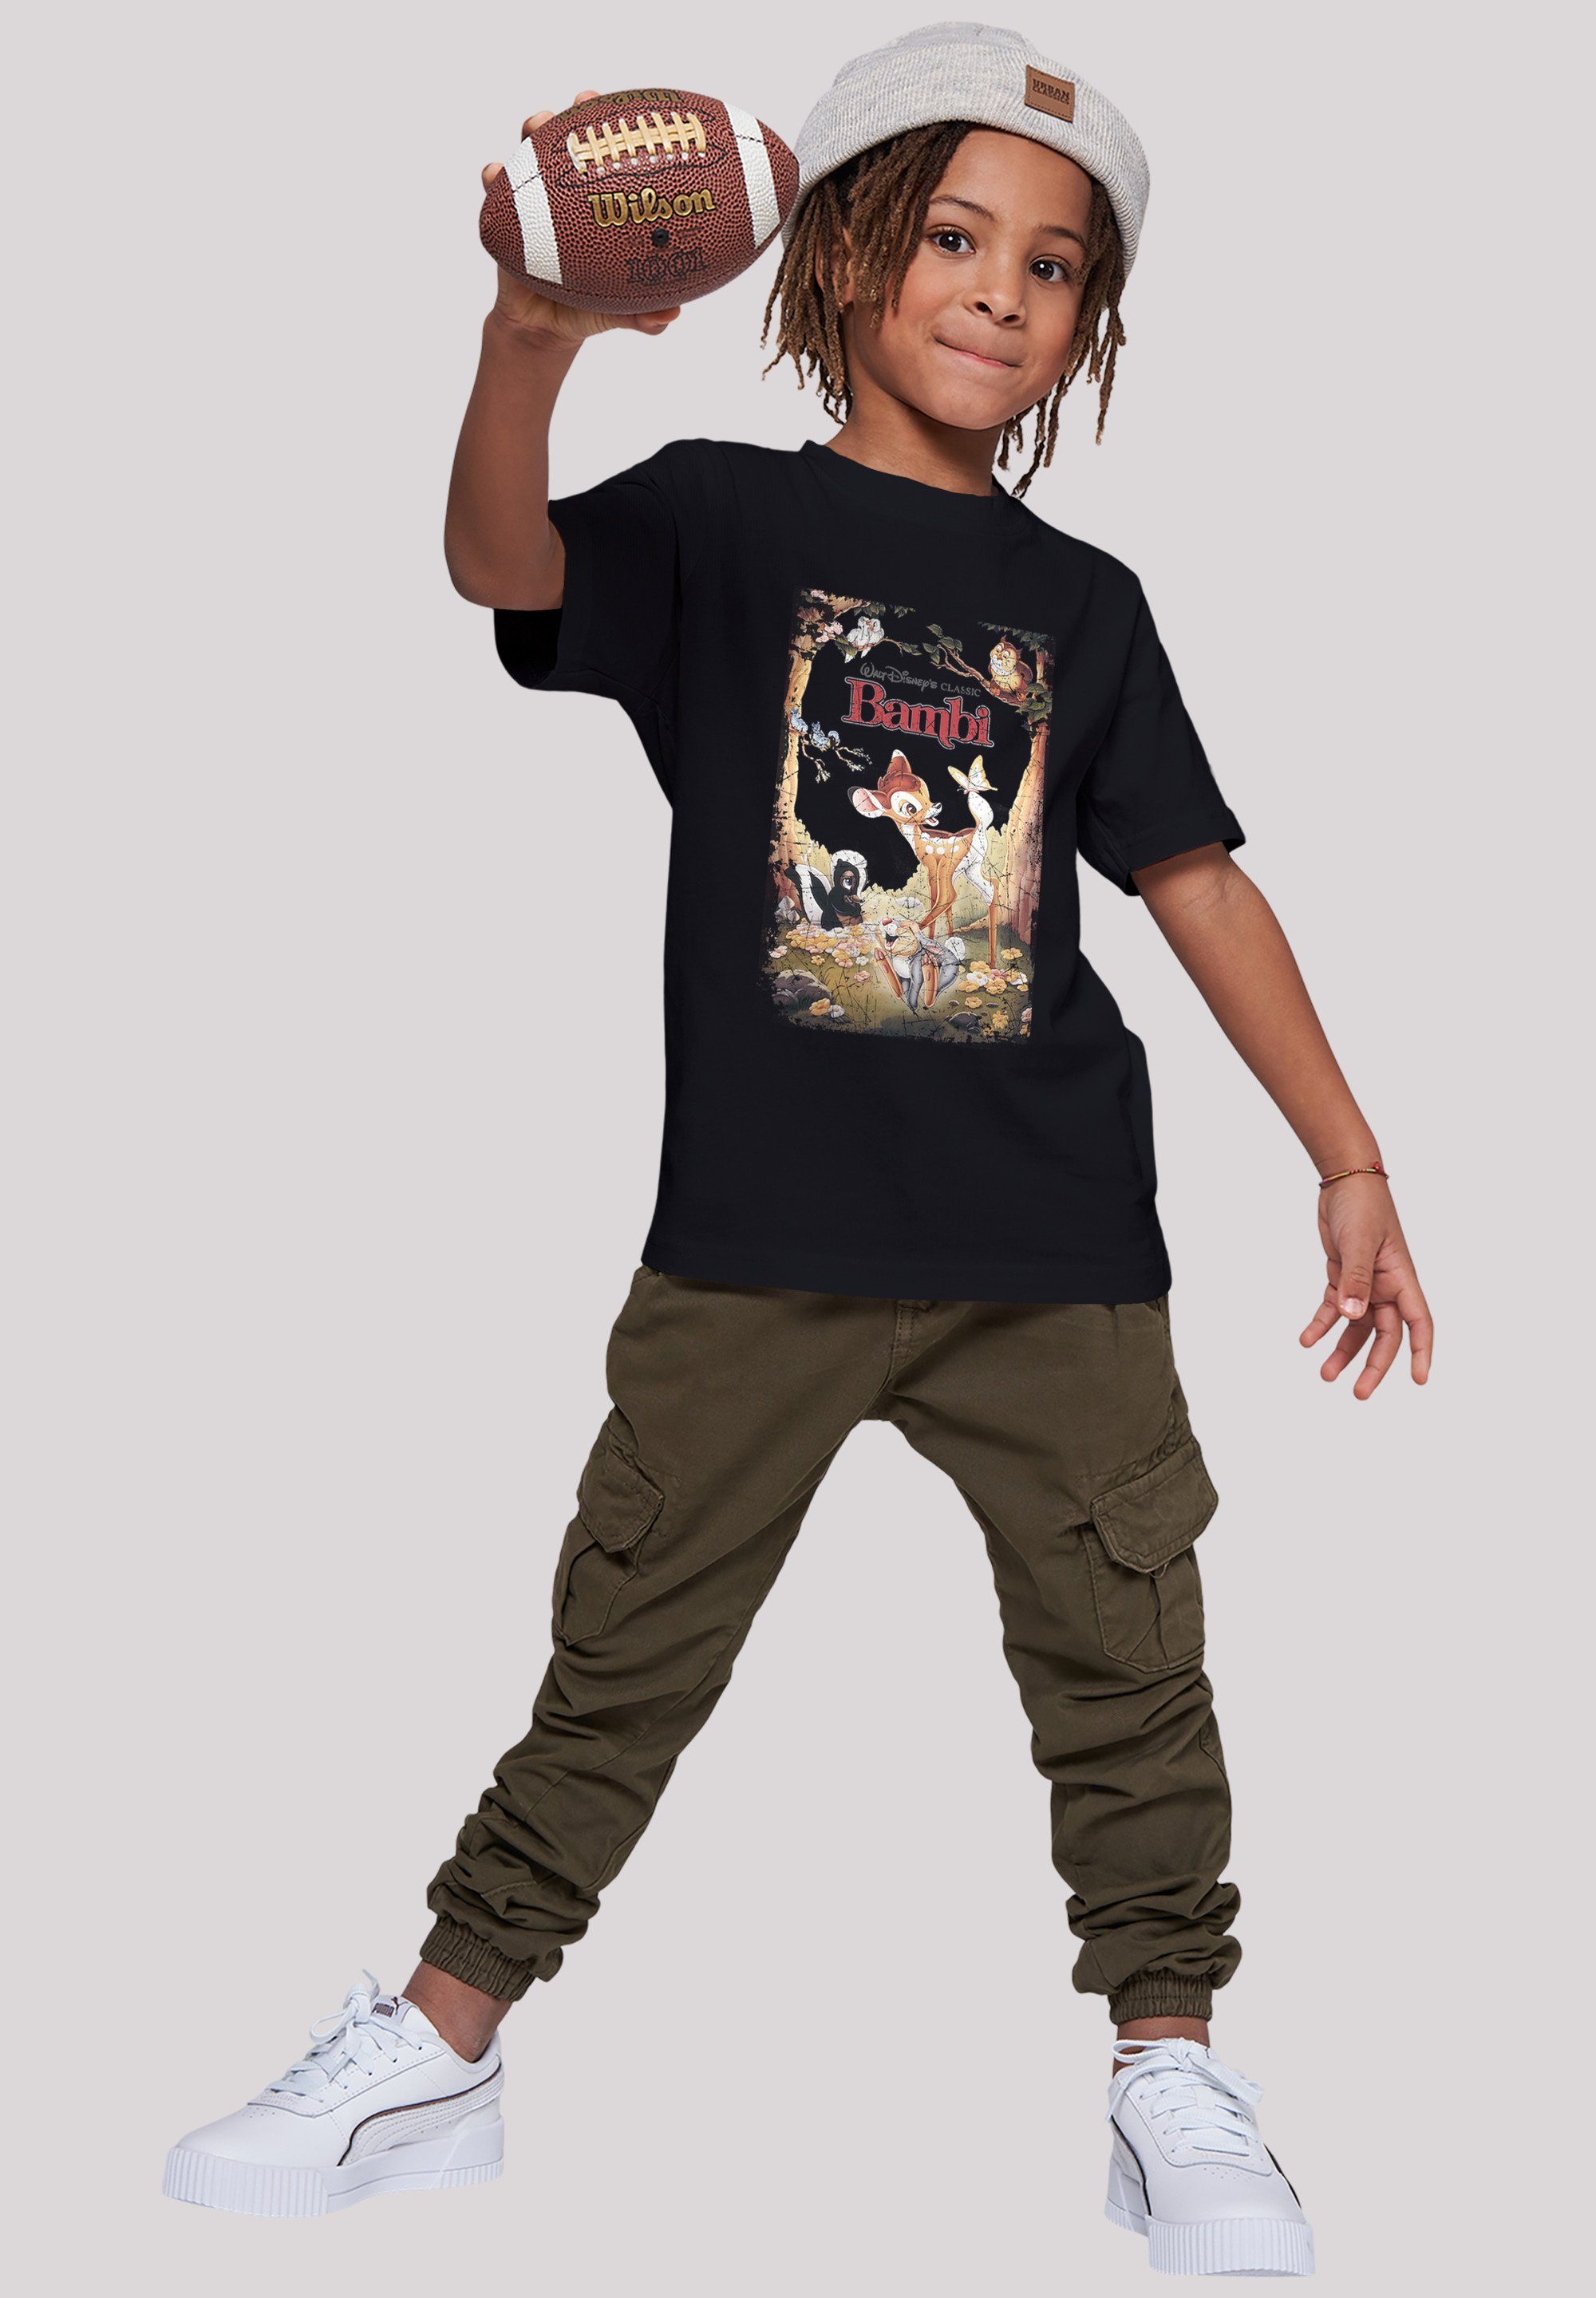 Kinder,Premium Retro Disney F4NT4STIC Bambi Merch,Jungen,Mädchen,Bedruckt T-Shirt Poster Unisex